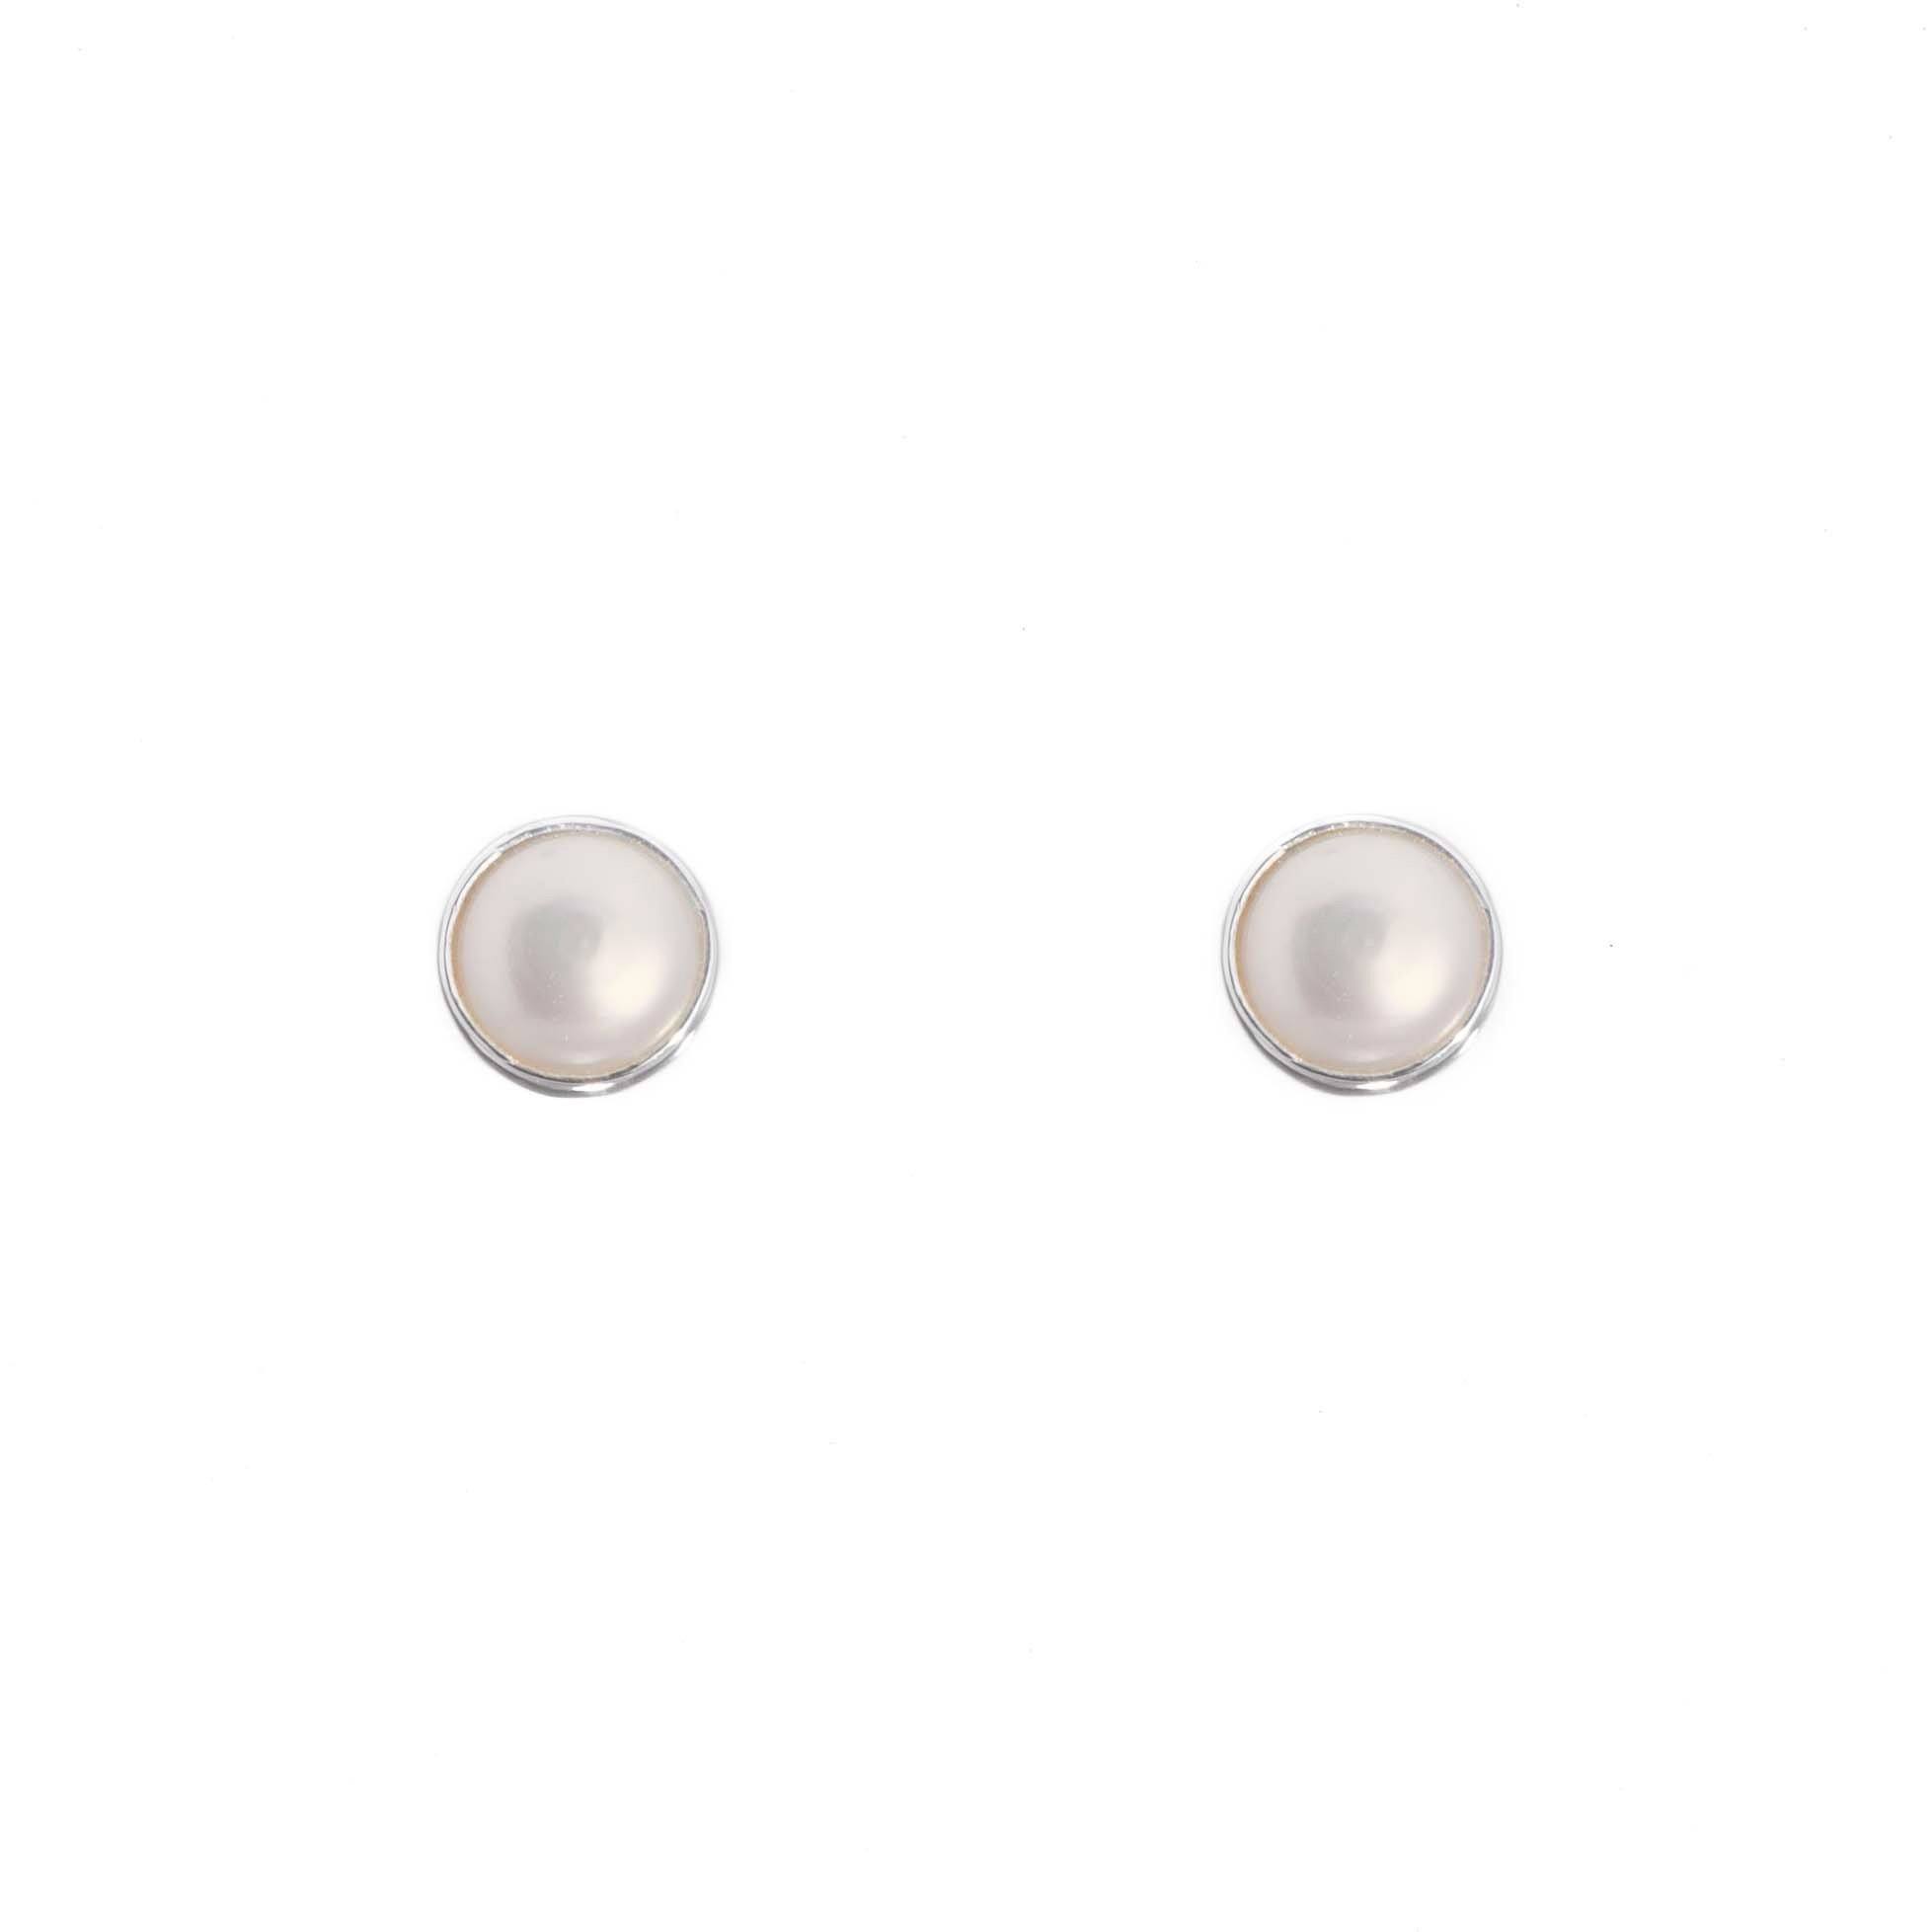 Aretes con perlas biseladas en plata